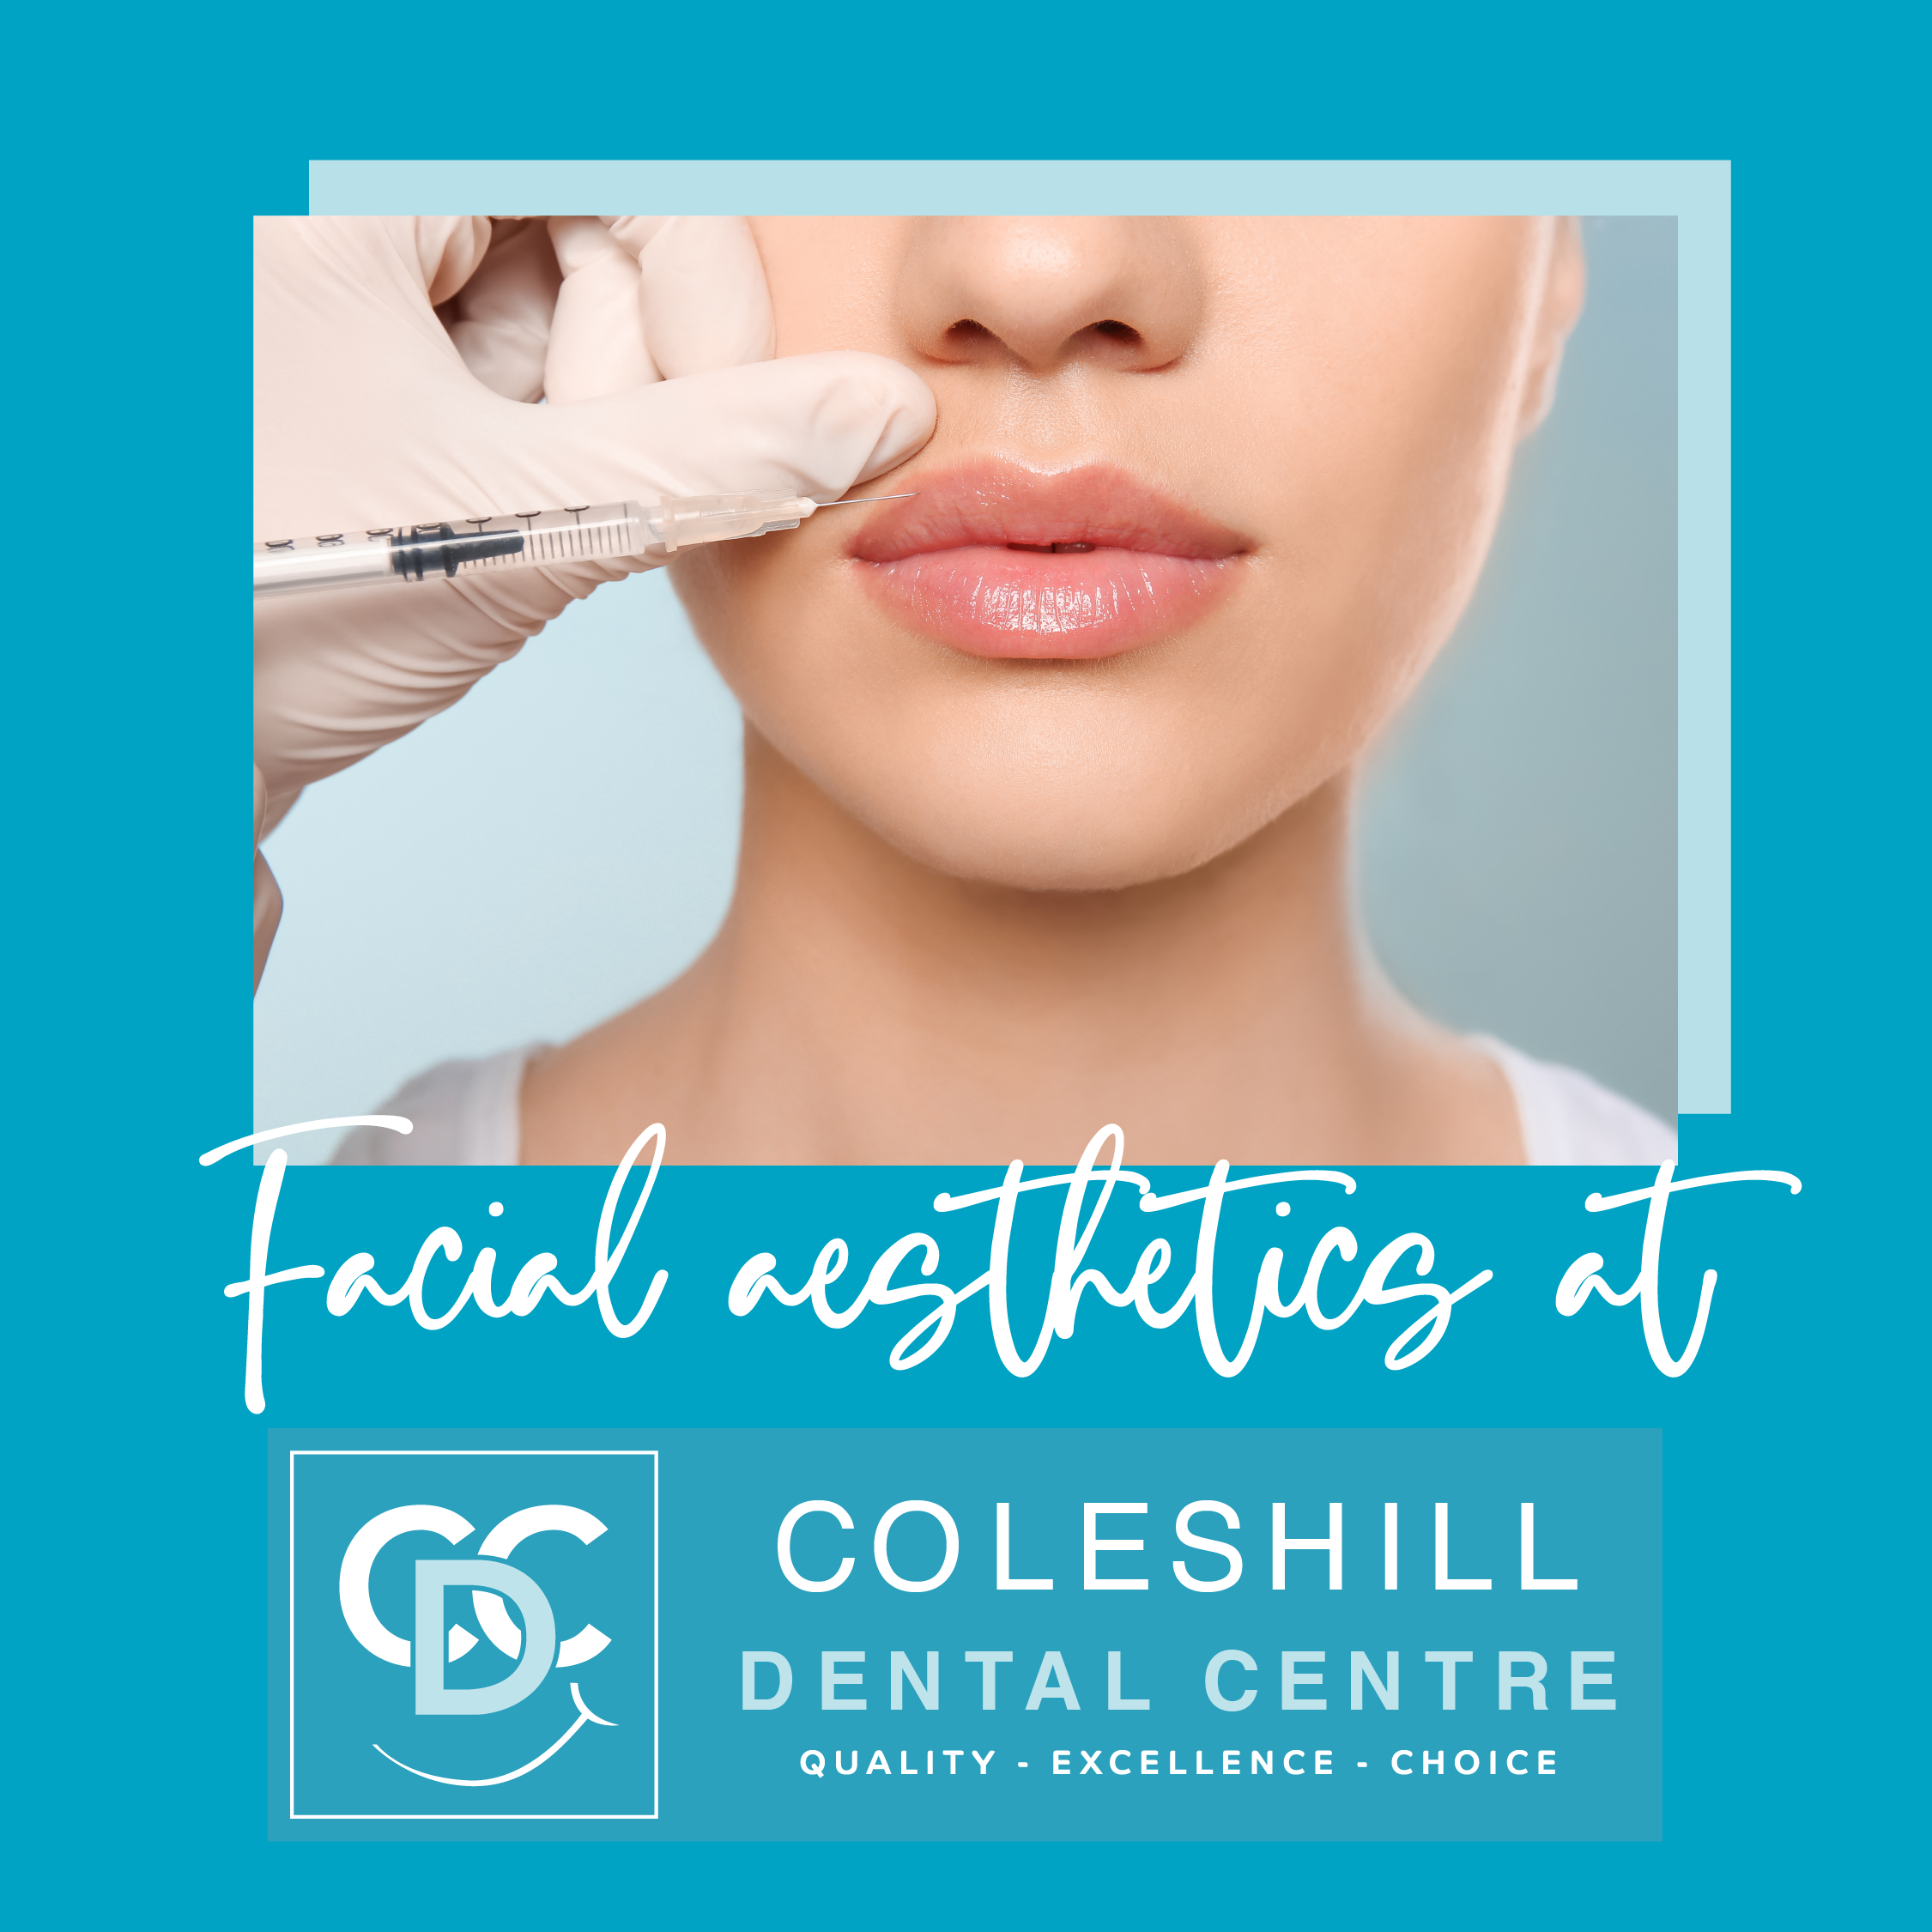 Coleshill Dental Facial Aesthetics Chin Nasal Lines Lip Filler Birmingham Warwickshire